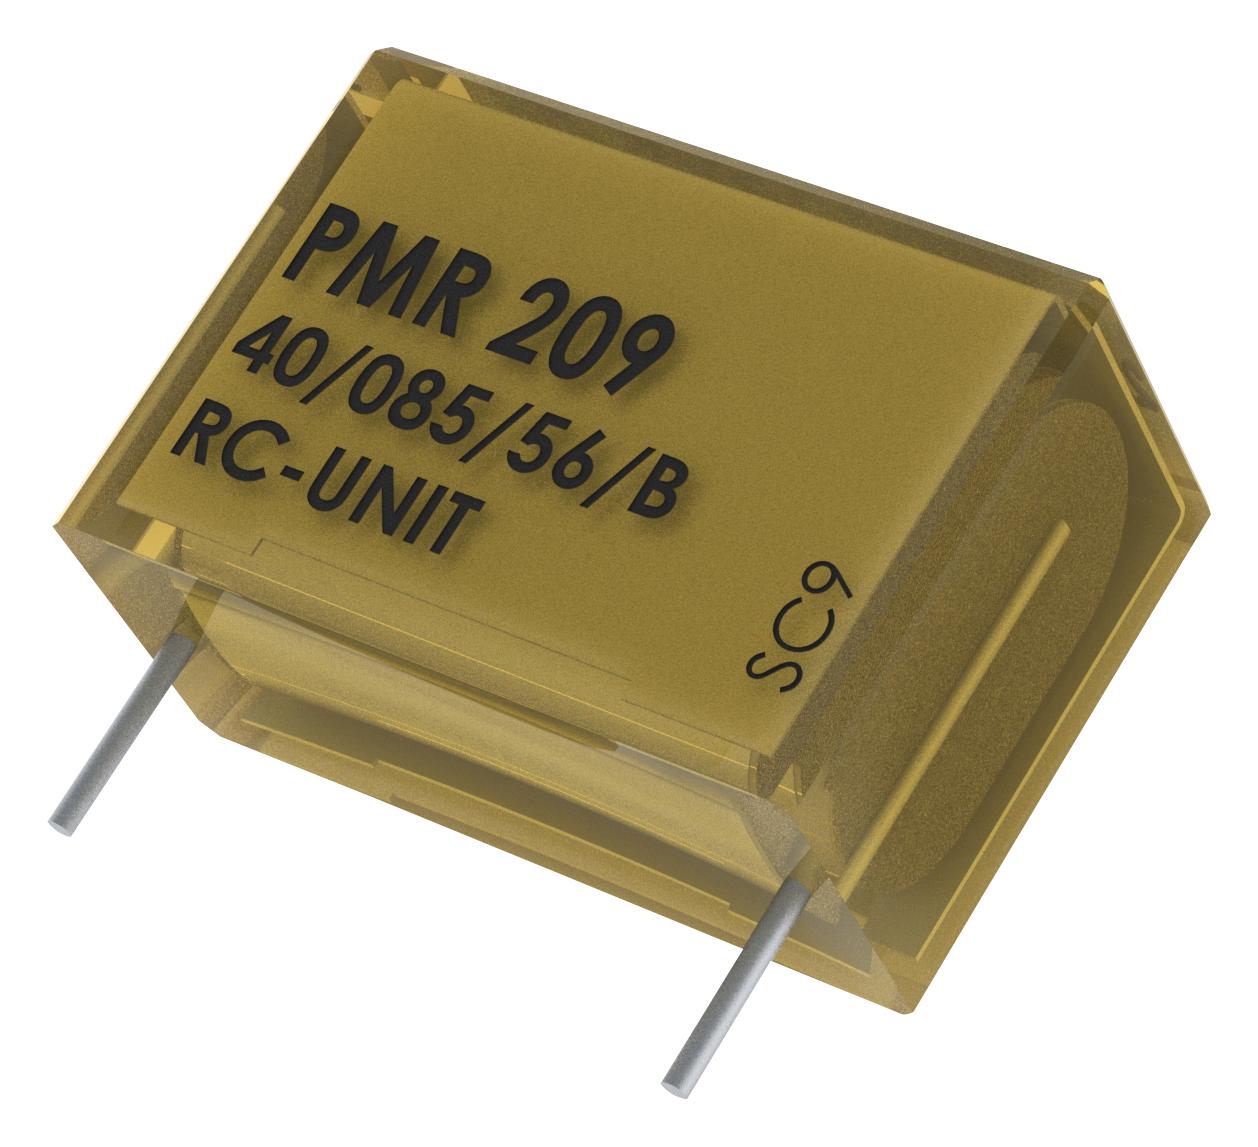 PMR209ME6470M047R30 CAP, 0.47µF, 20%, PAPER, RADIAL KEMET